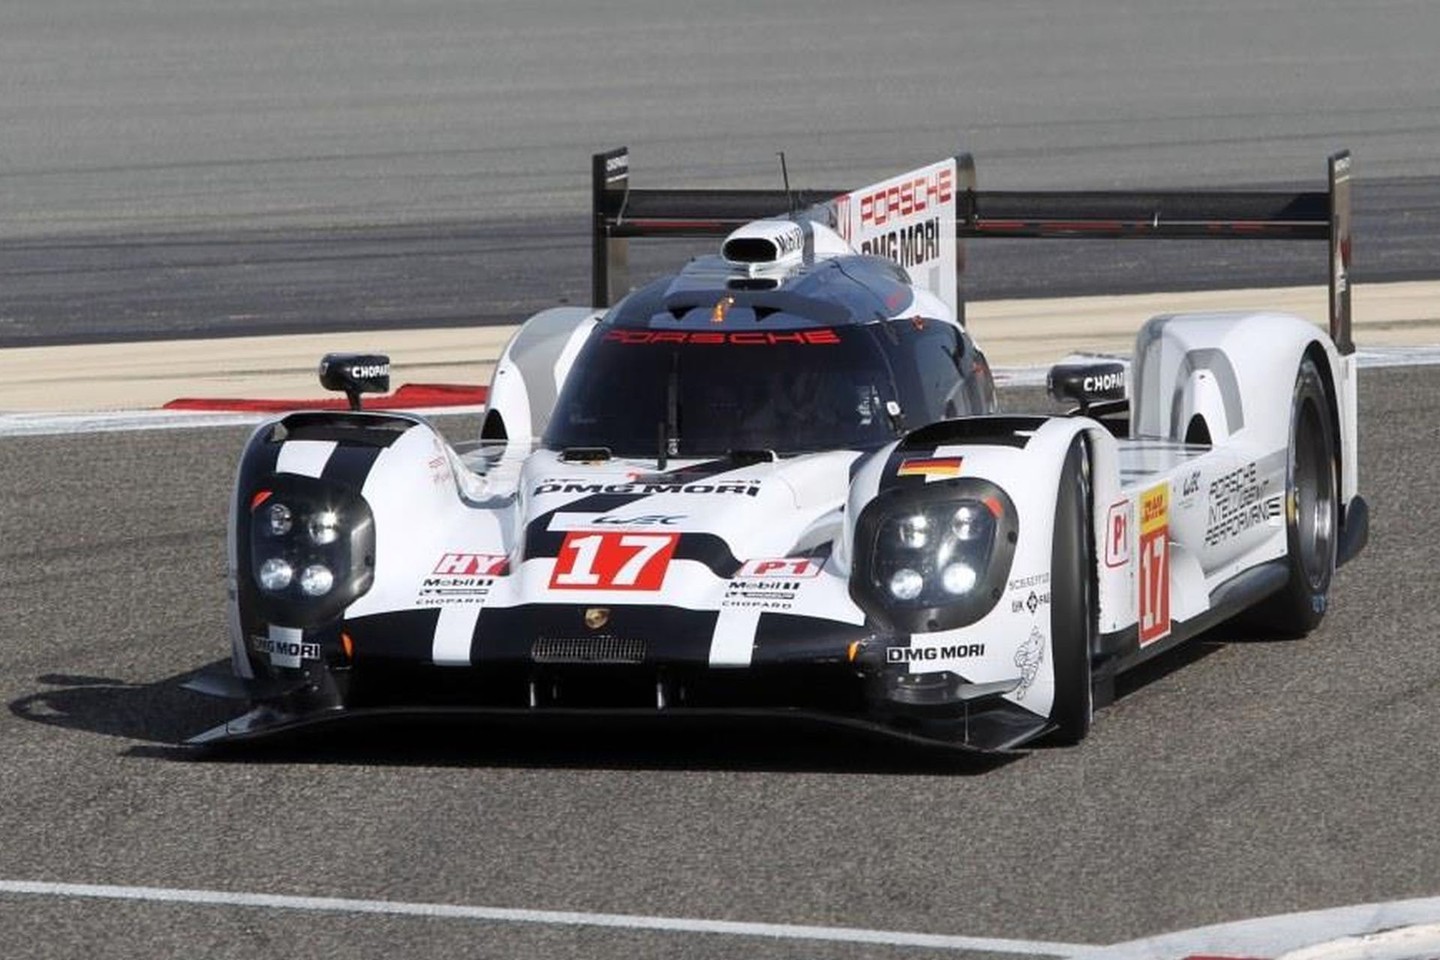 Pagrindinėse WEC taurės lenktynėse Le Mane vietoje trijų „Porsche“ automobilių varžysis du.<br>Gamintojo nuotr.